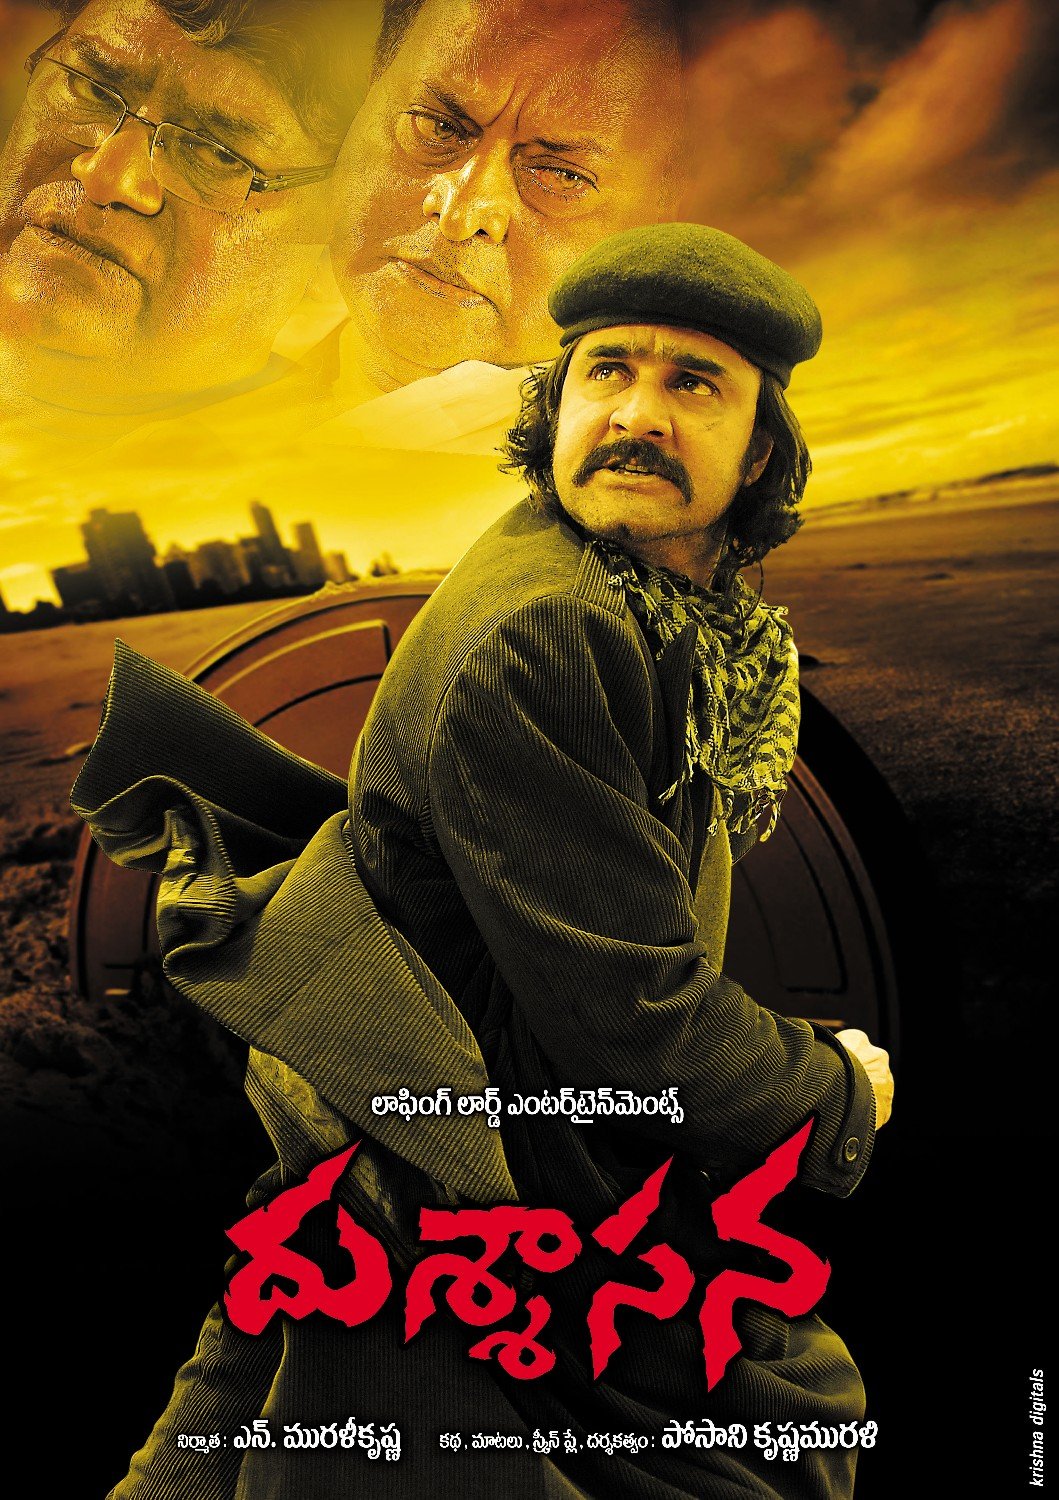 Extra Large Movie Poster Image for Dushasana (#9 of 10)